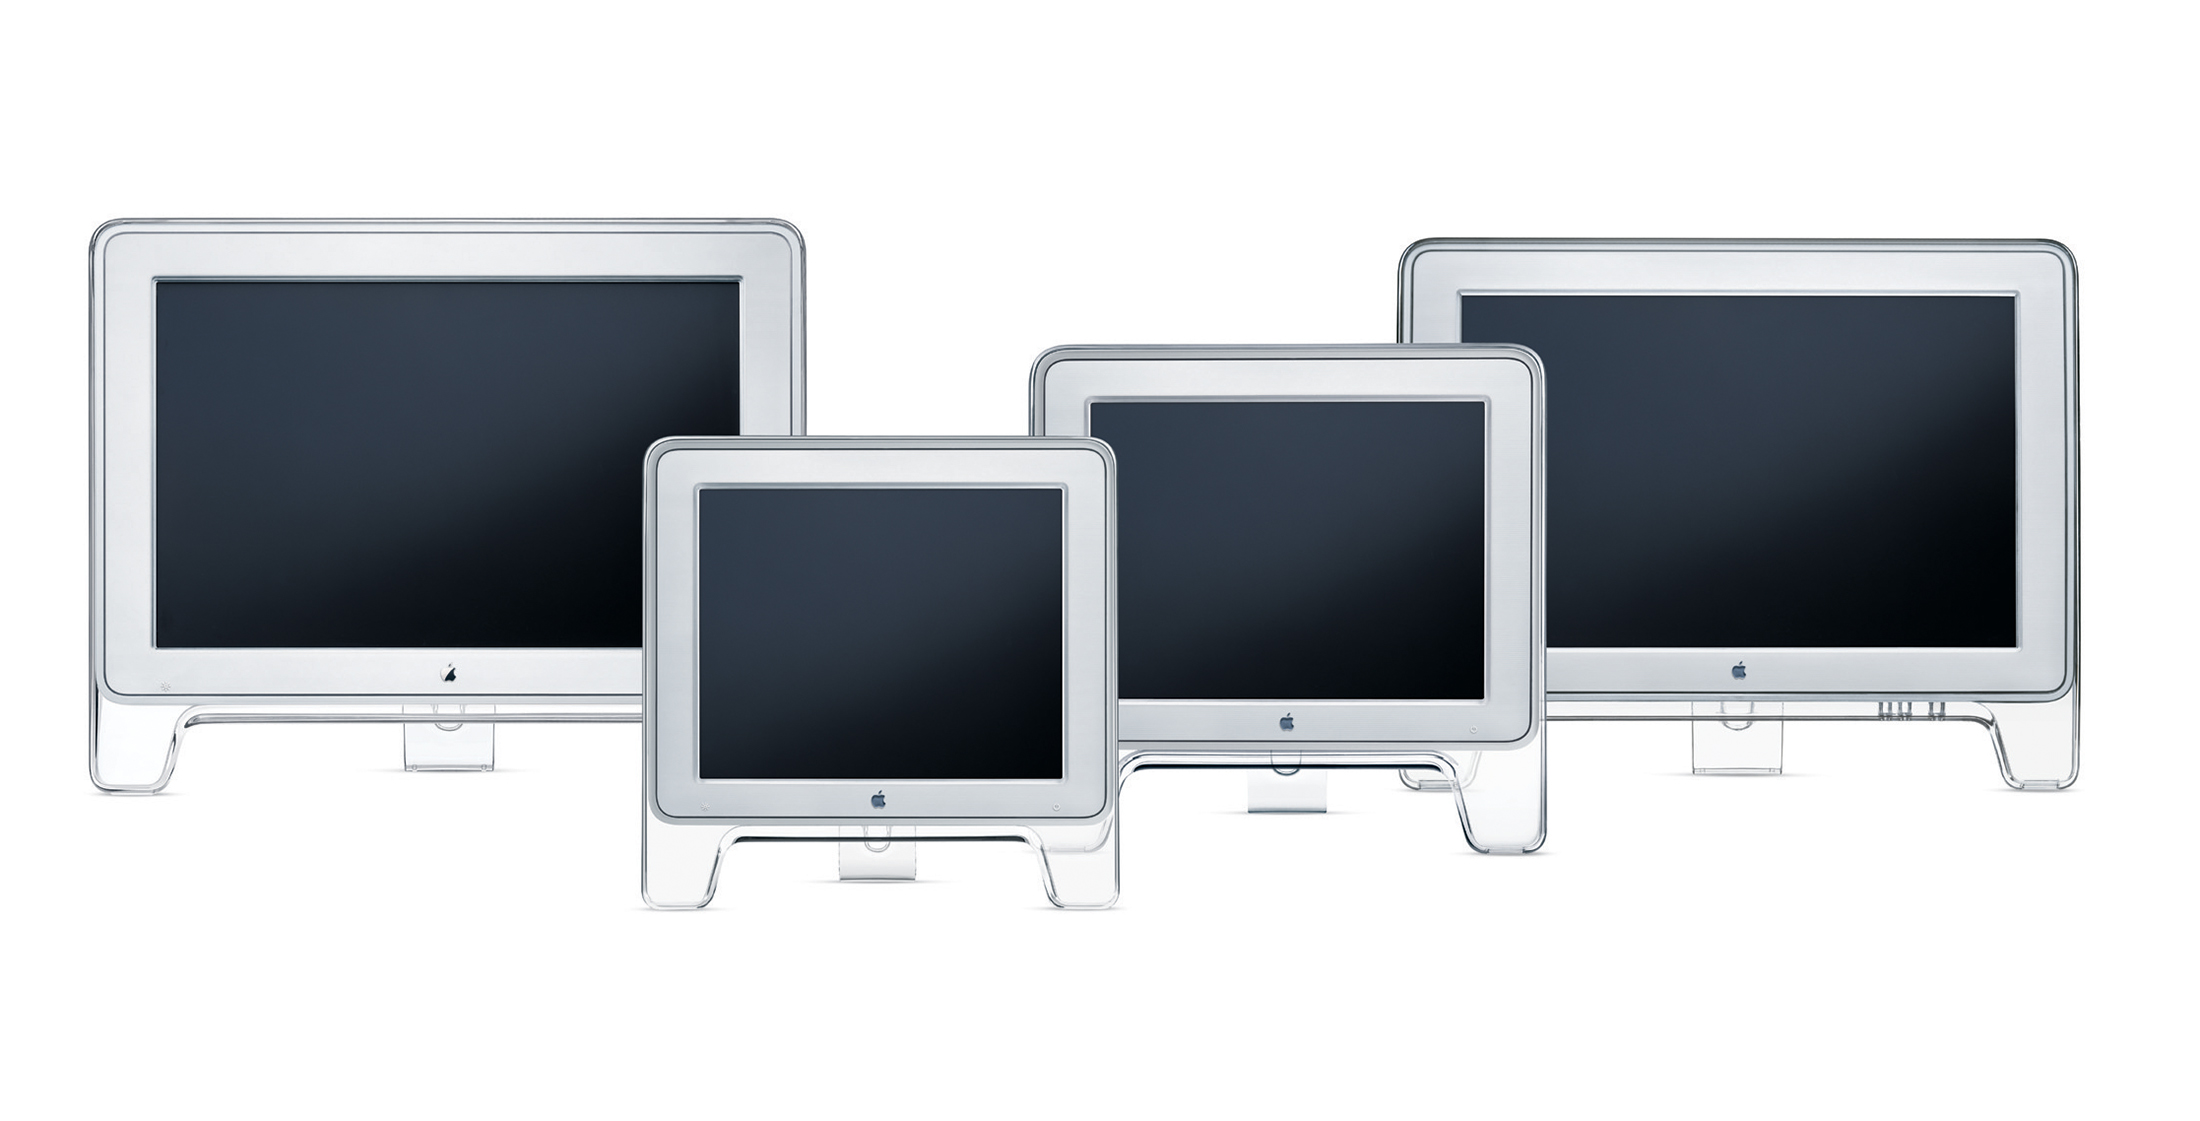 2002 Apple Display Lineup